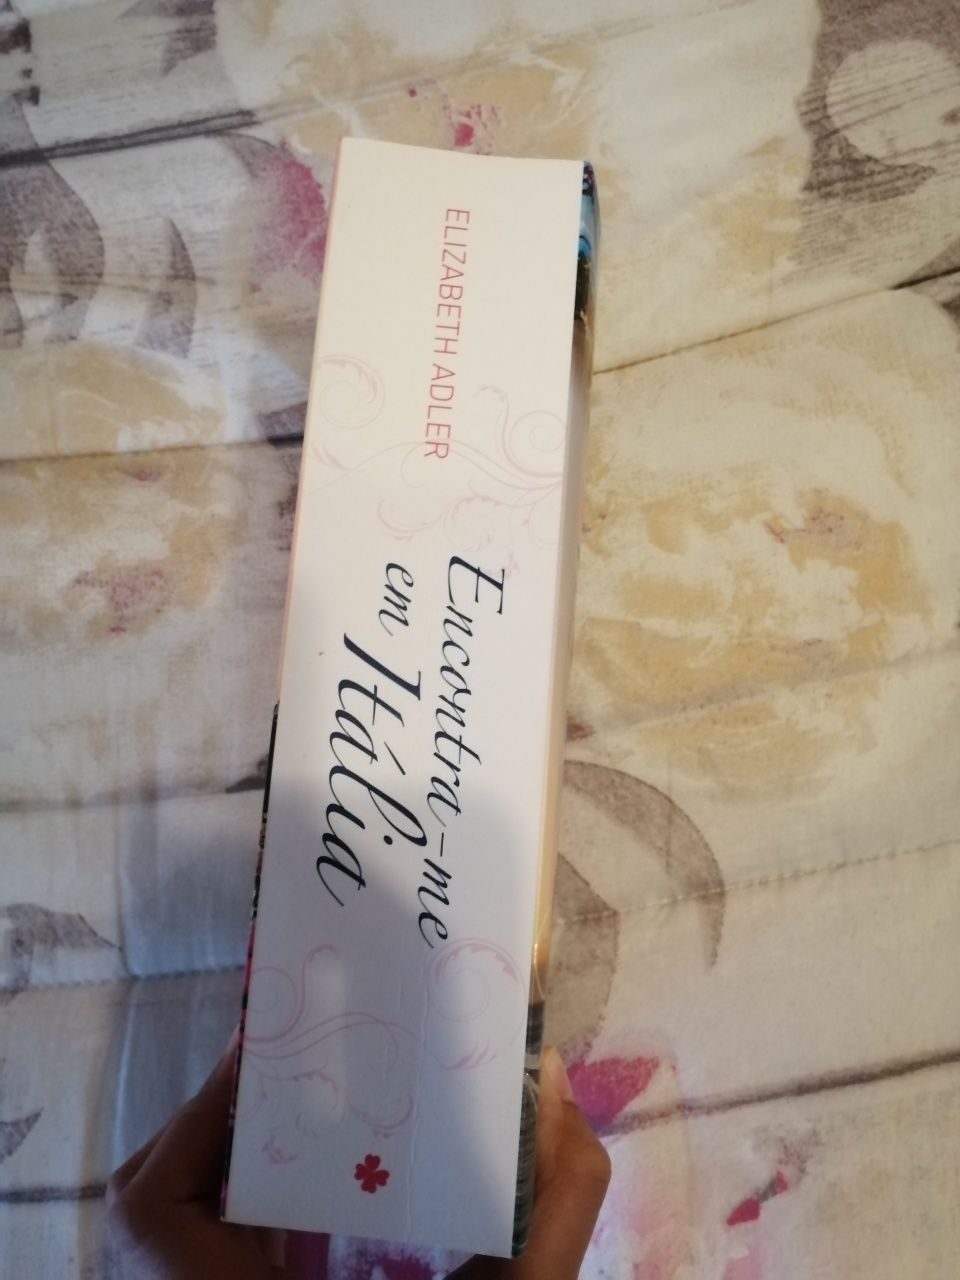 Livro "Encontra-me em Itália" de Elizabeth Adler